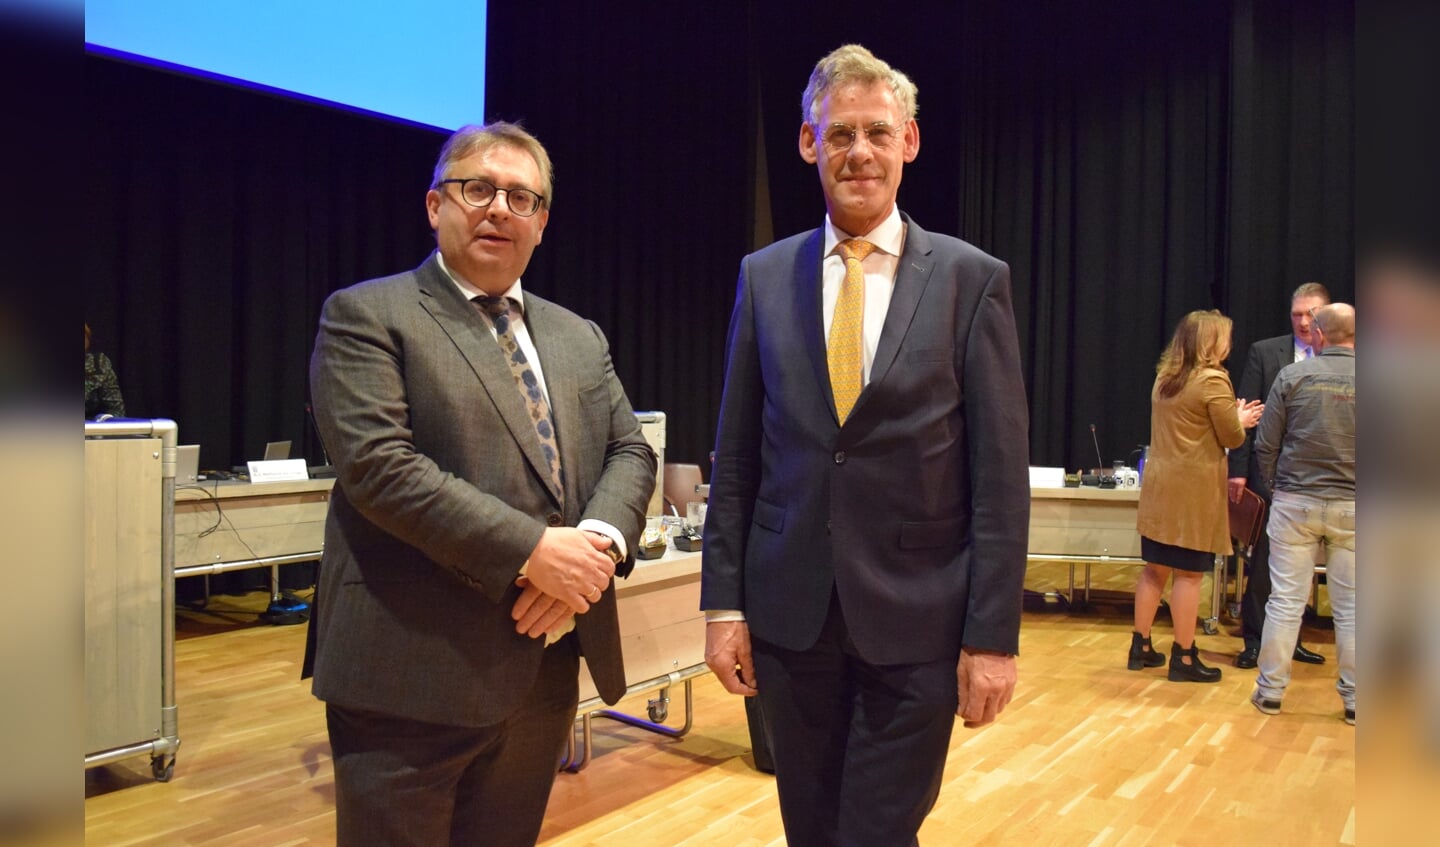 De beoogde kandidaat-wethouders van SGP-huize met links Gerard van Deelen en rechts Izaak van Ekeren.